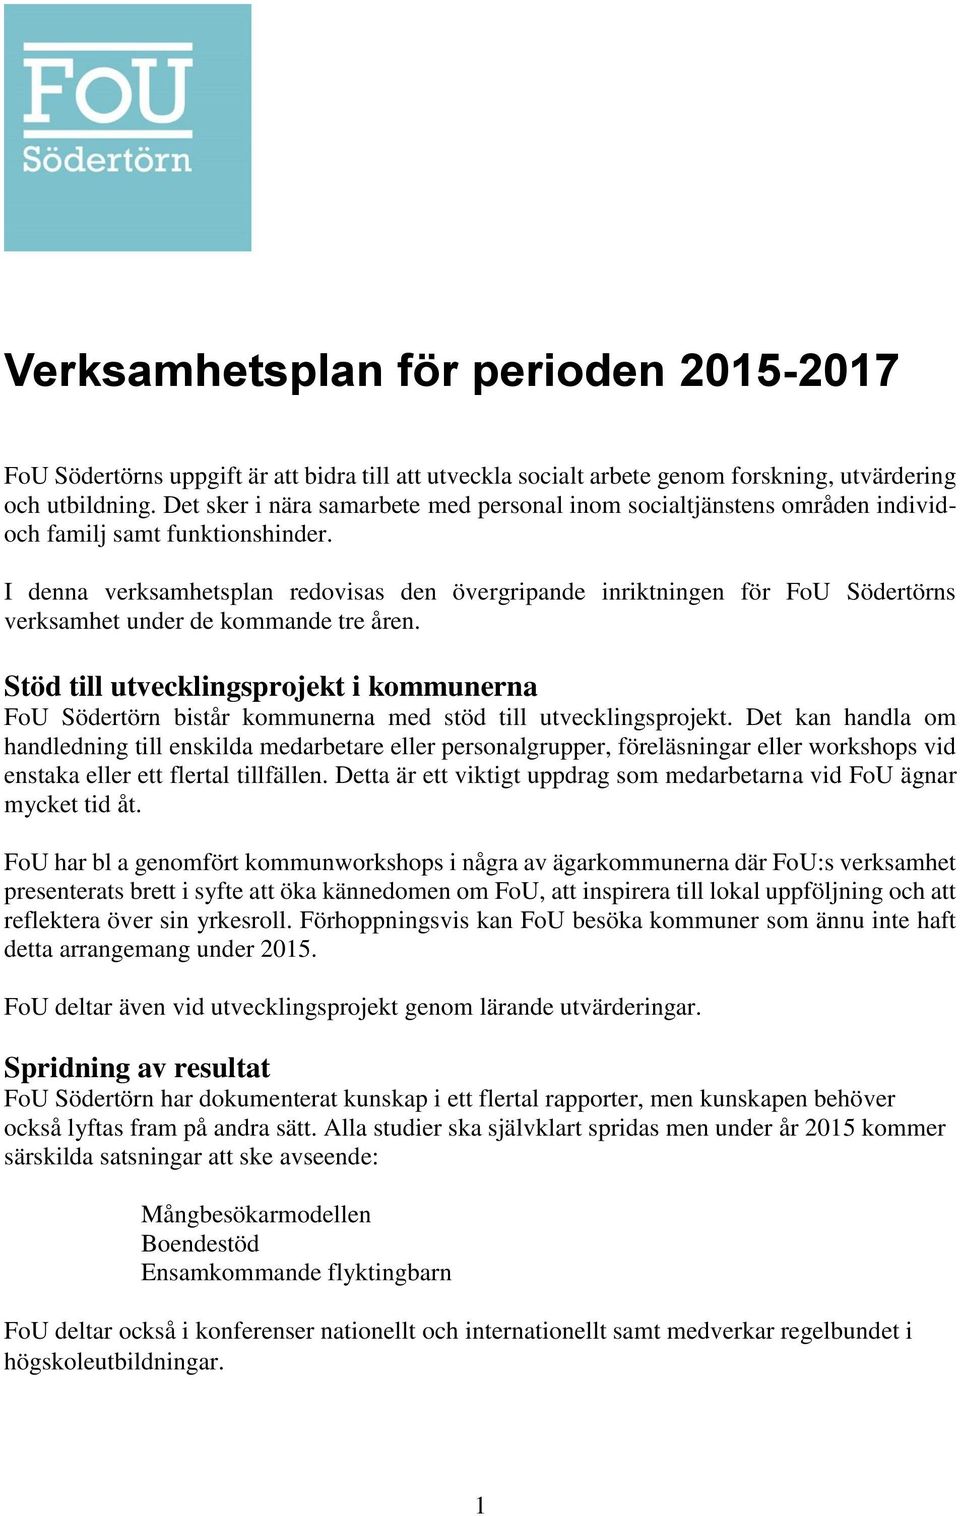 I denna verksamhetsplan redovisas den övergripande inriktningen för FoU Södertörns verksamhet under de kommande tre åren.